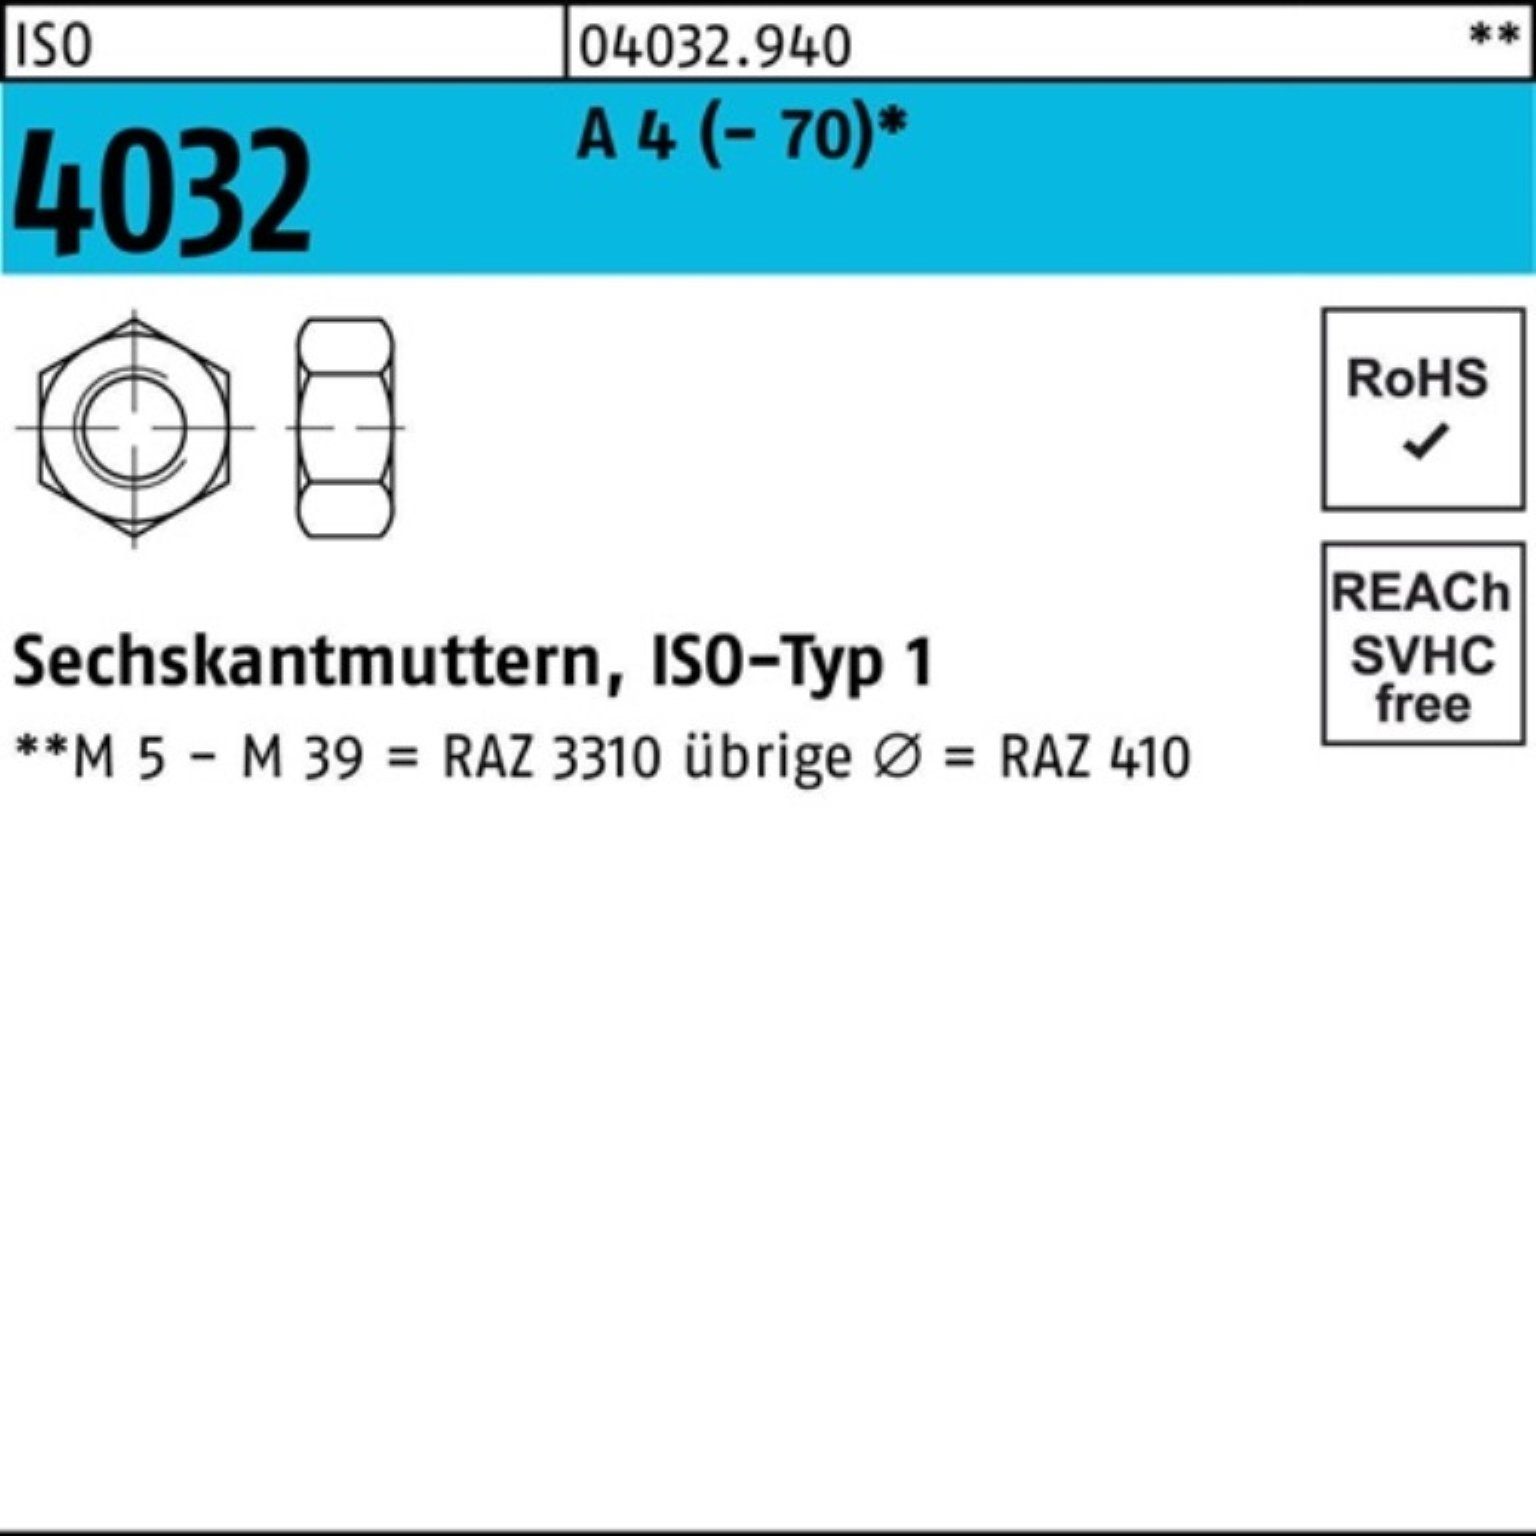 A 1 - Bufab 70 ISO 4 100er Muttern Sechskantmutter Pack ISO A 4 4032 Stück M48 4032